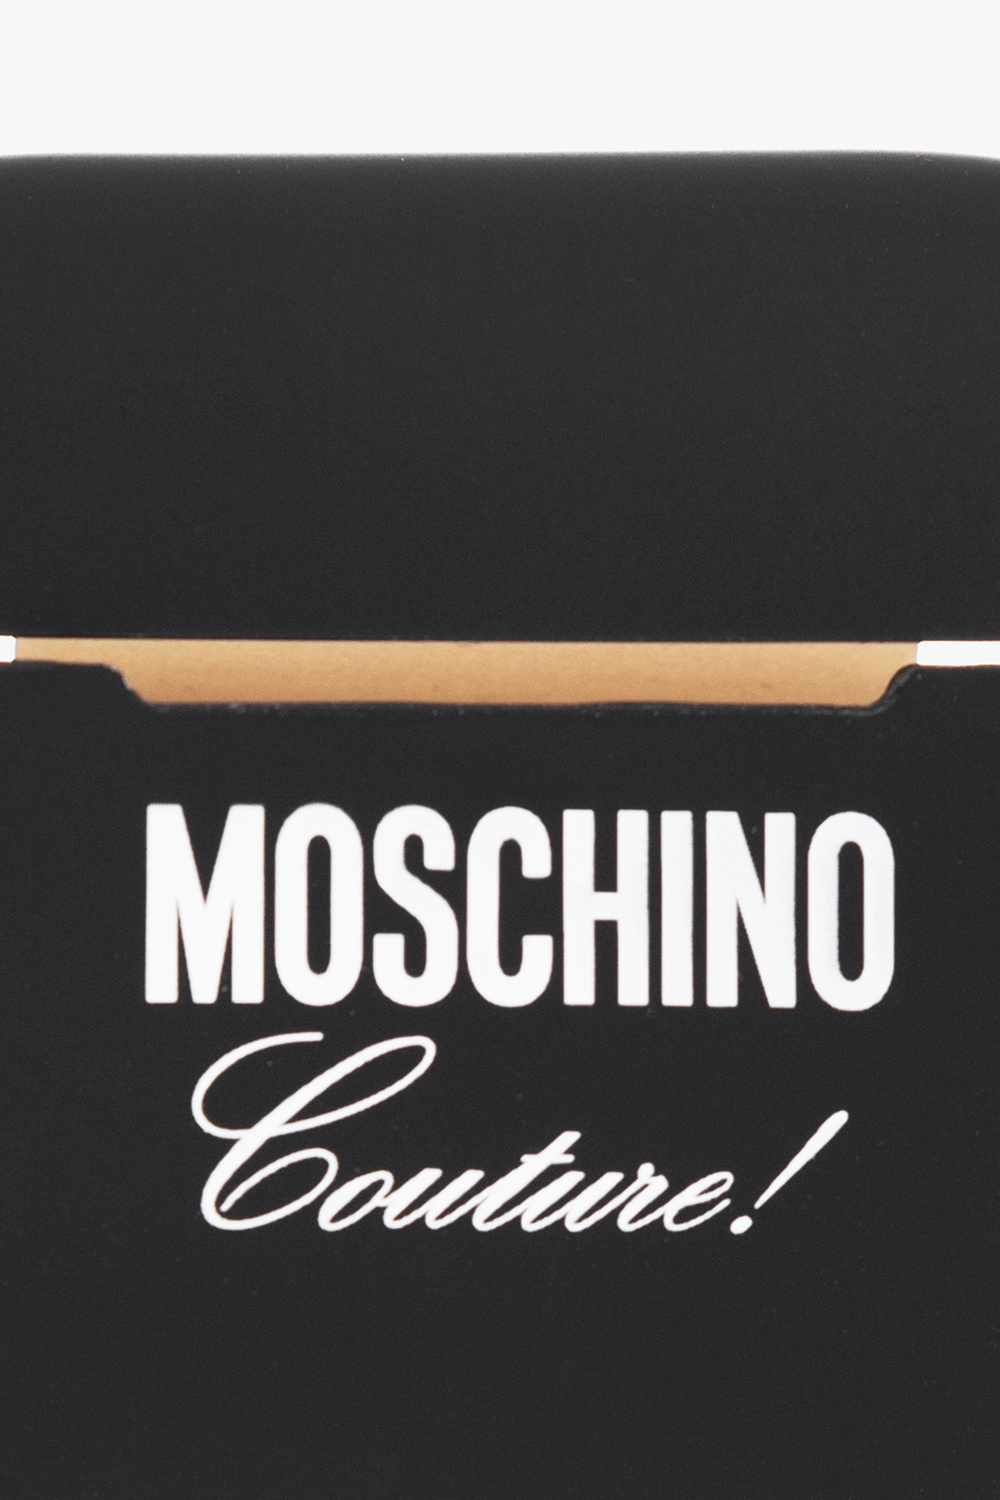 Moschino AirPods Pro case | Men's Accessorie | StclaircomoShops